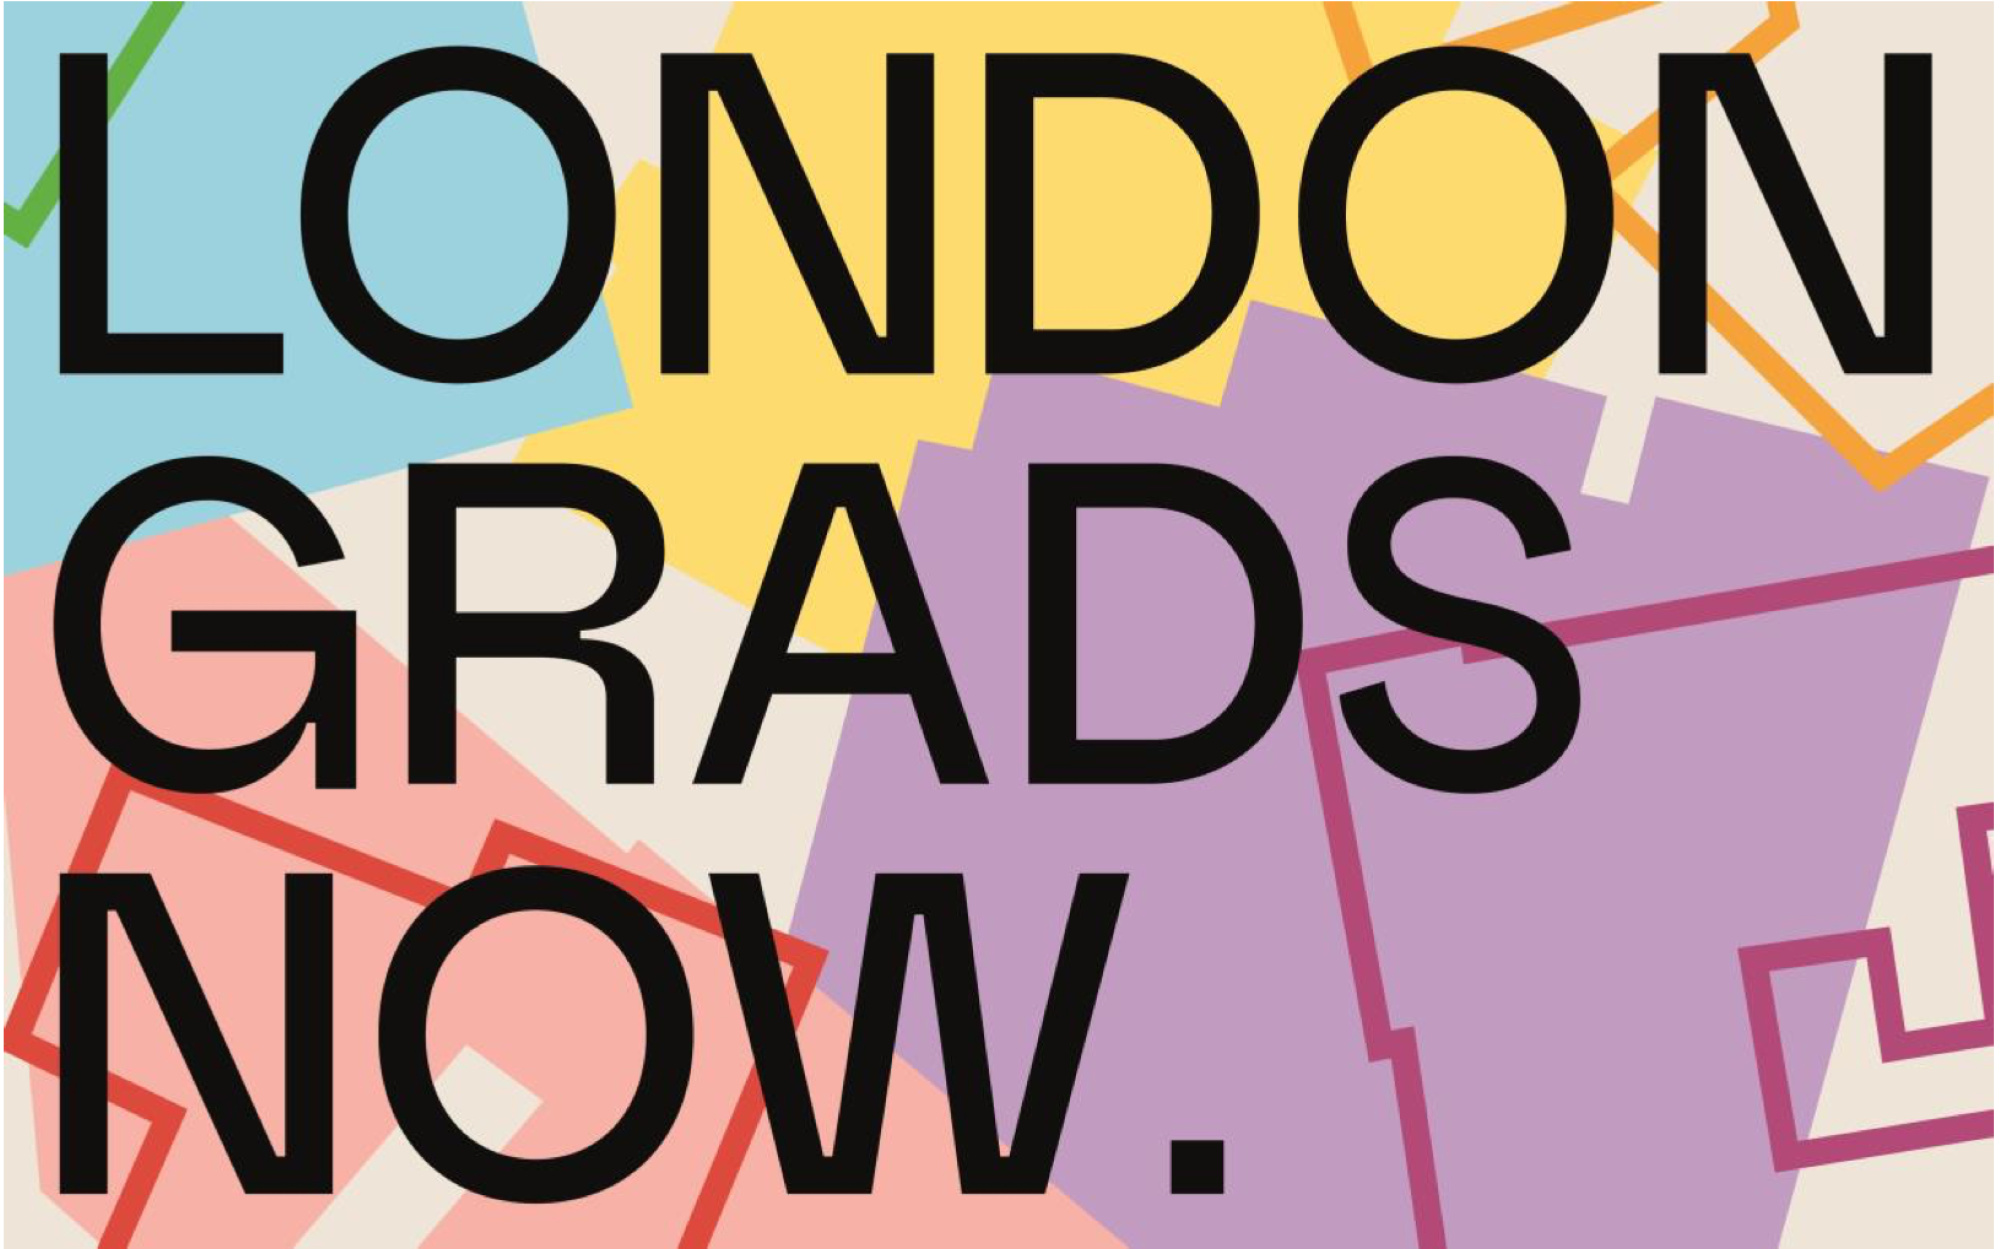 London Grads Now - Saatchi Gallery